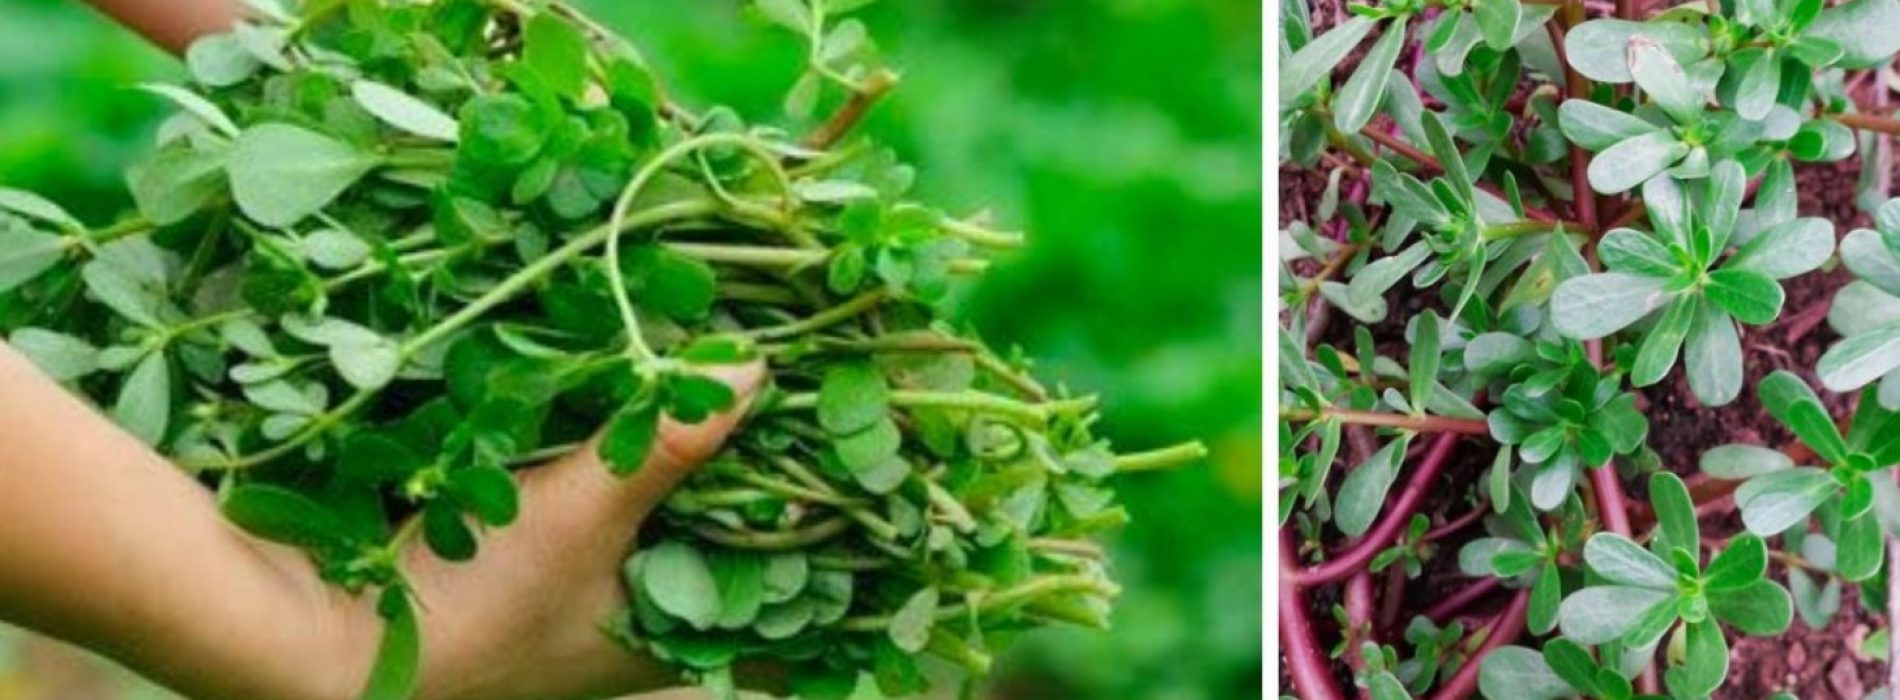 Gewoon onkruid kan een “superplant” zijn die de sleutel vormt tot het creëren van droogtebestendige gewassen